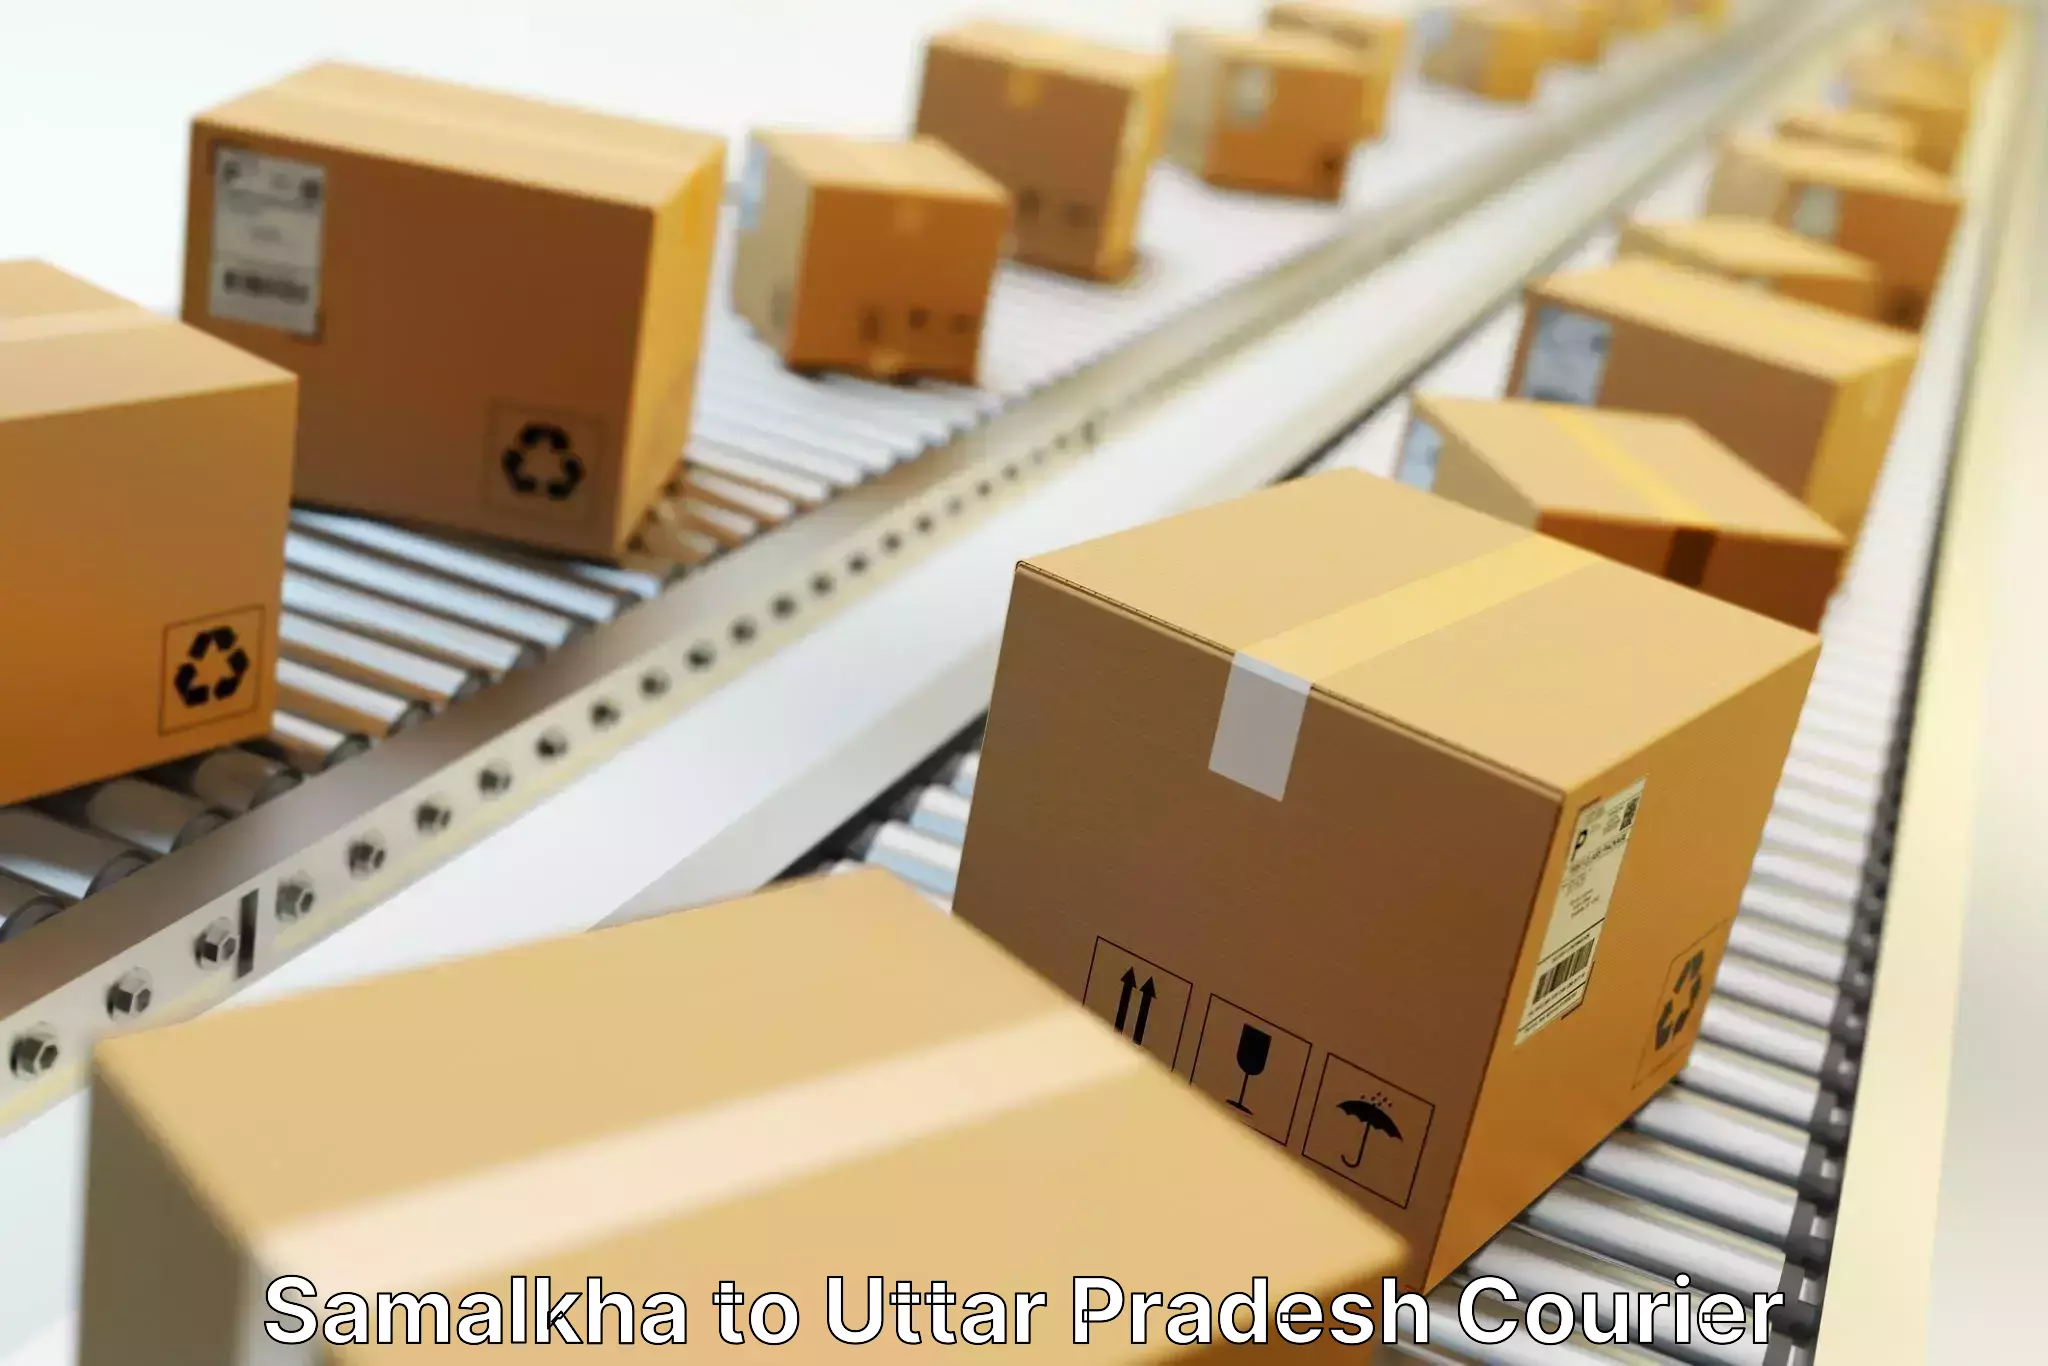 Customized shipping options in Samalkha to Sidhauli